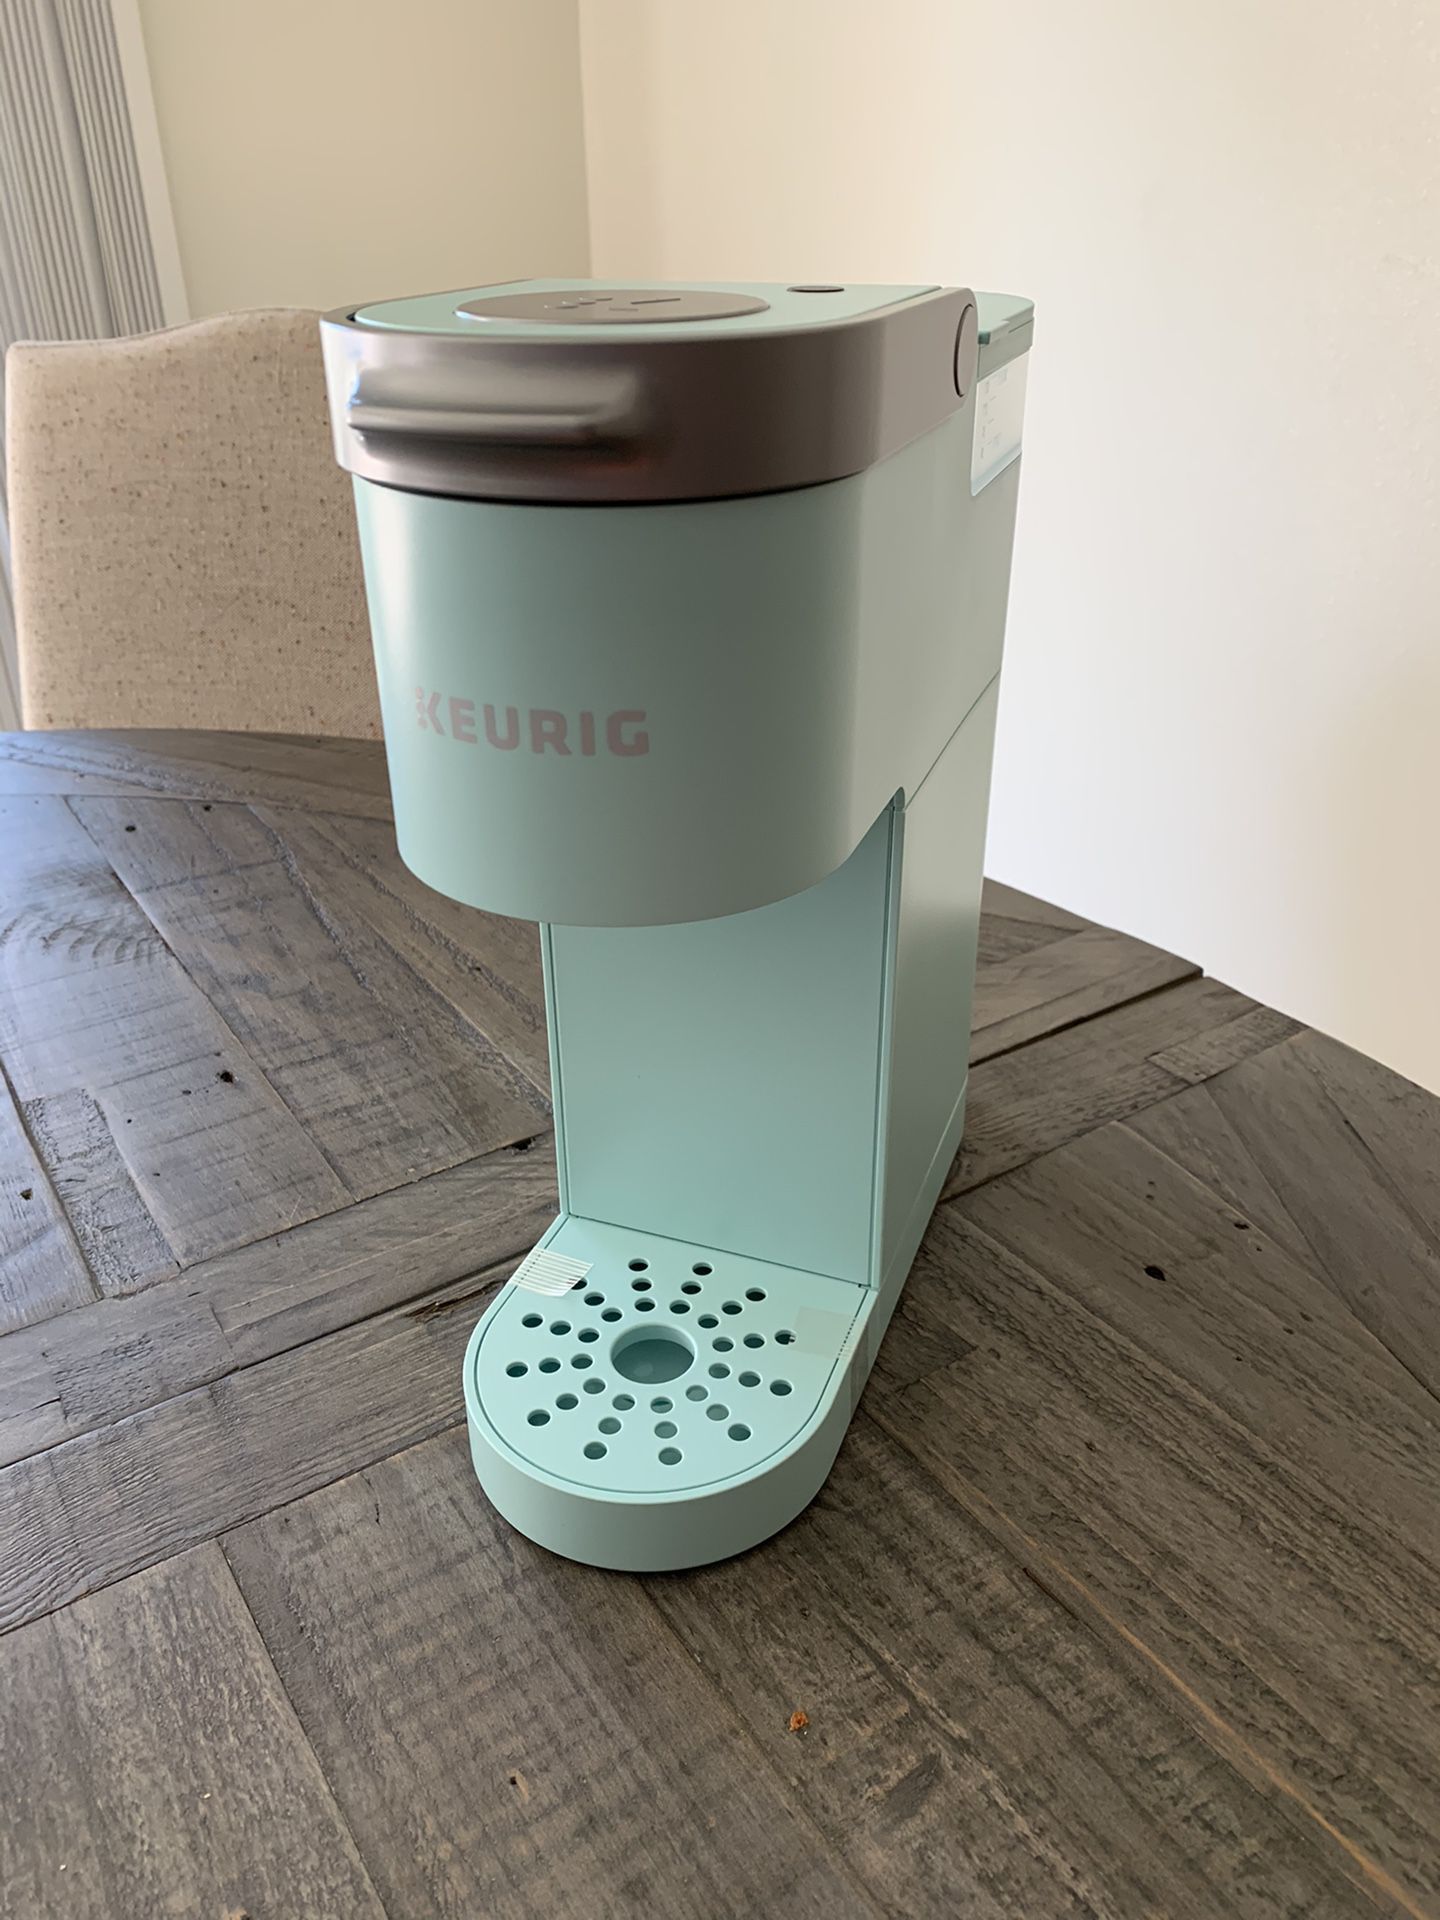 Keurig (K-mini single serve coffee maker)